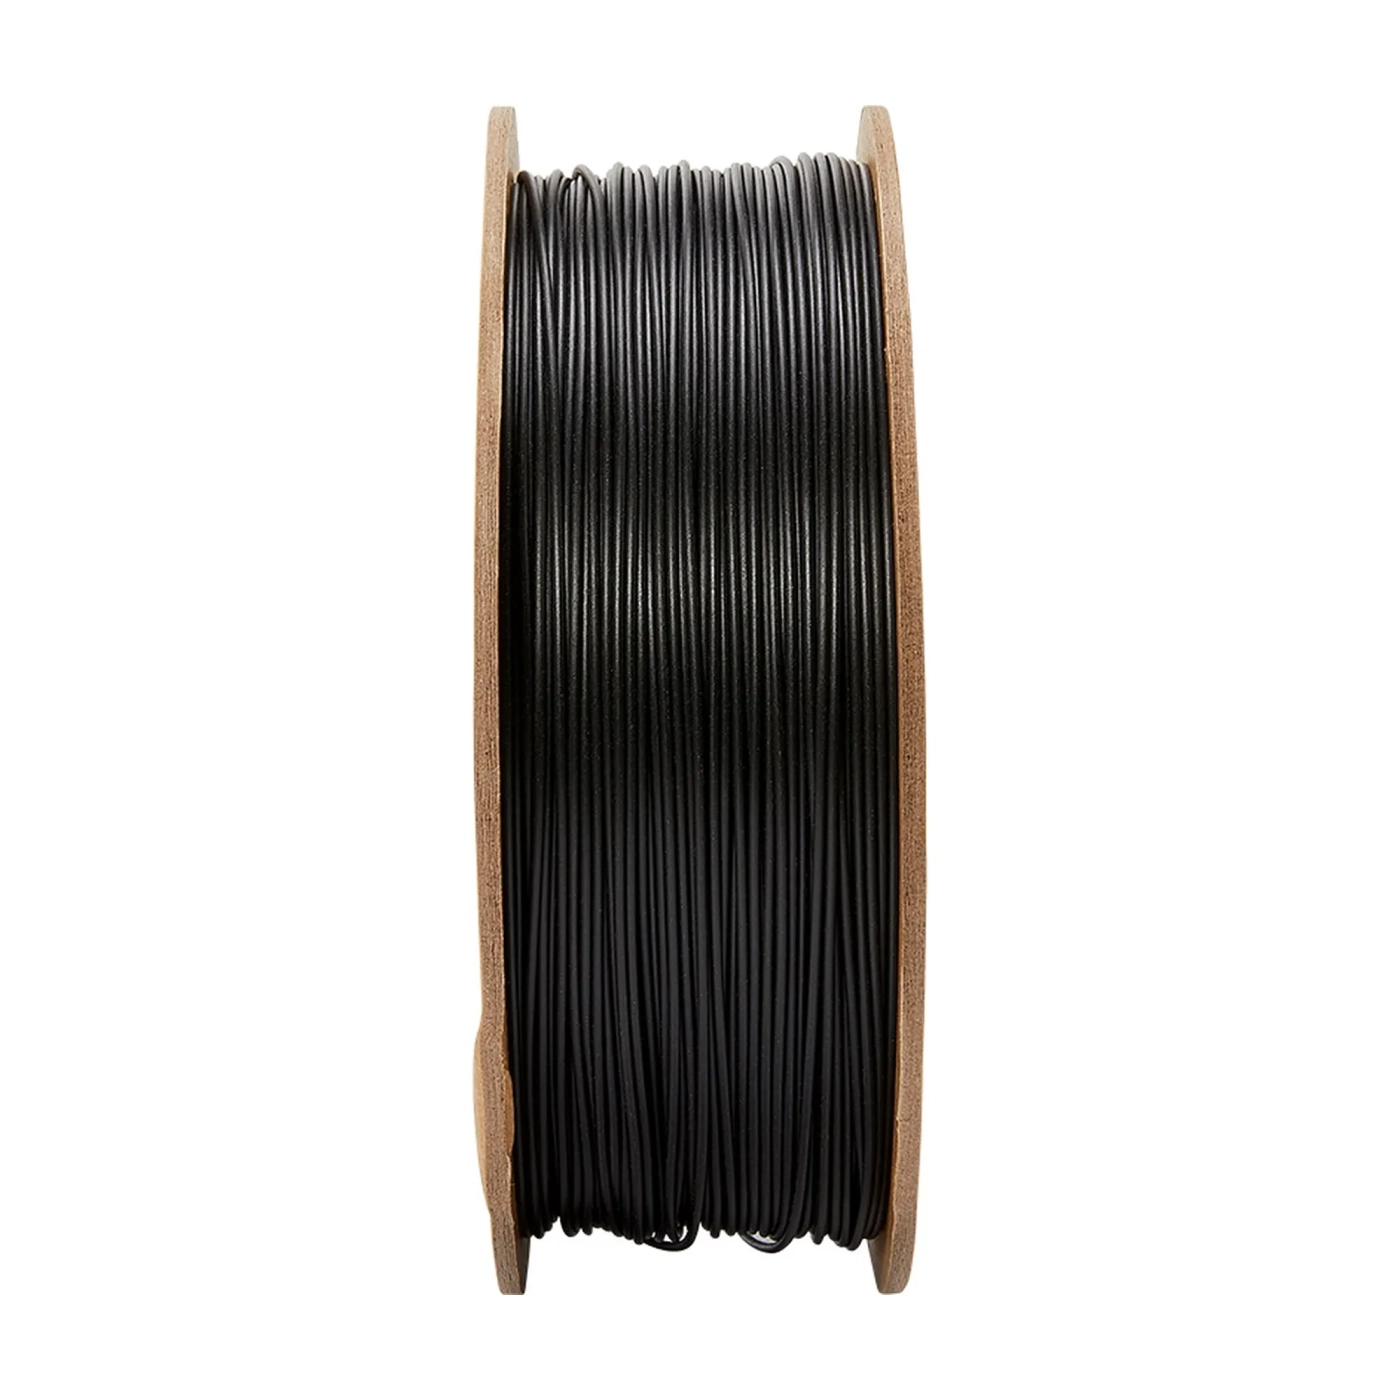 Купити PolyTerra PLA Plus Filament (пластик) для 3D принтера Polymaker 1кг, 1.75мм, чорний - фото 2